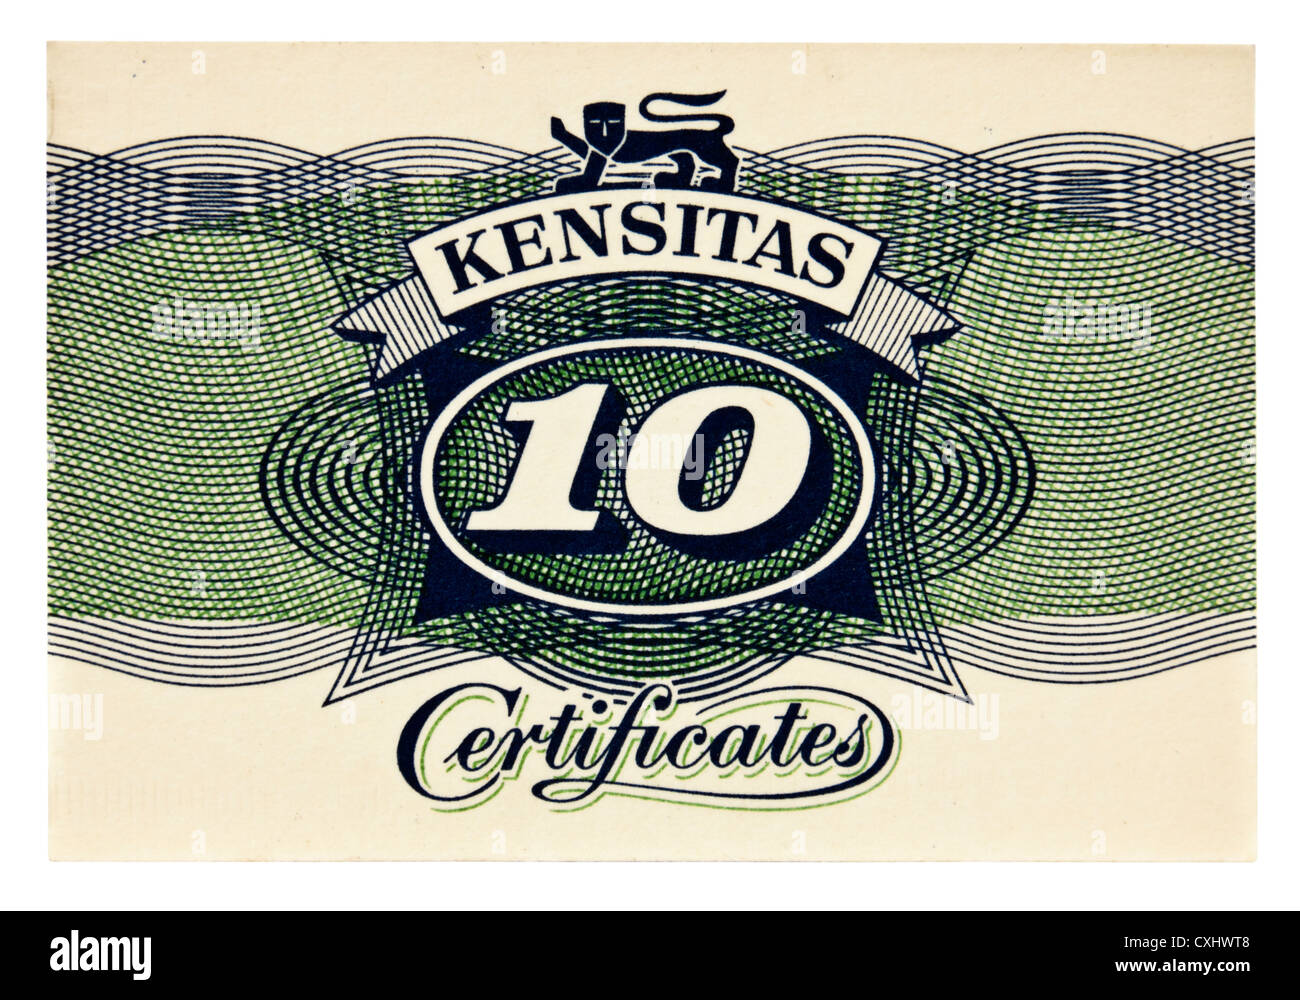 1930er Jahren Geschenk Kensitas "Ten Punkt" Zertifikat. Zertifikate oder Coupons wurden mit Kensitas Zigaretten verschenkt. Stockfoto